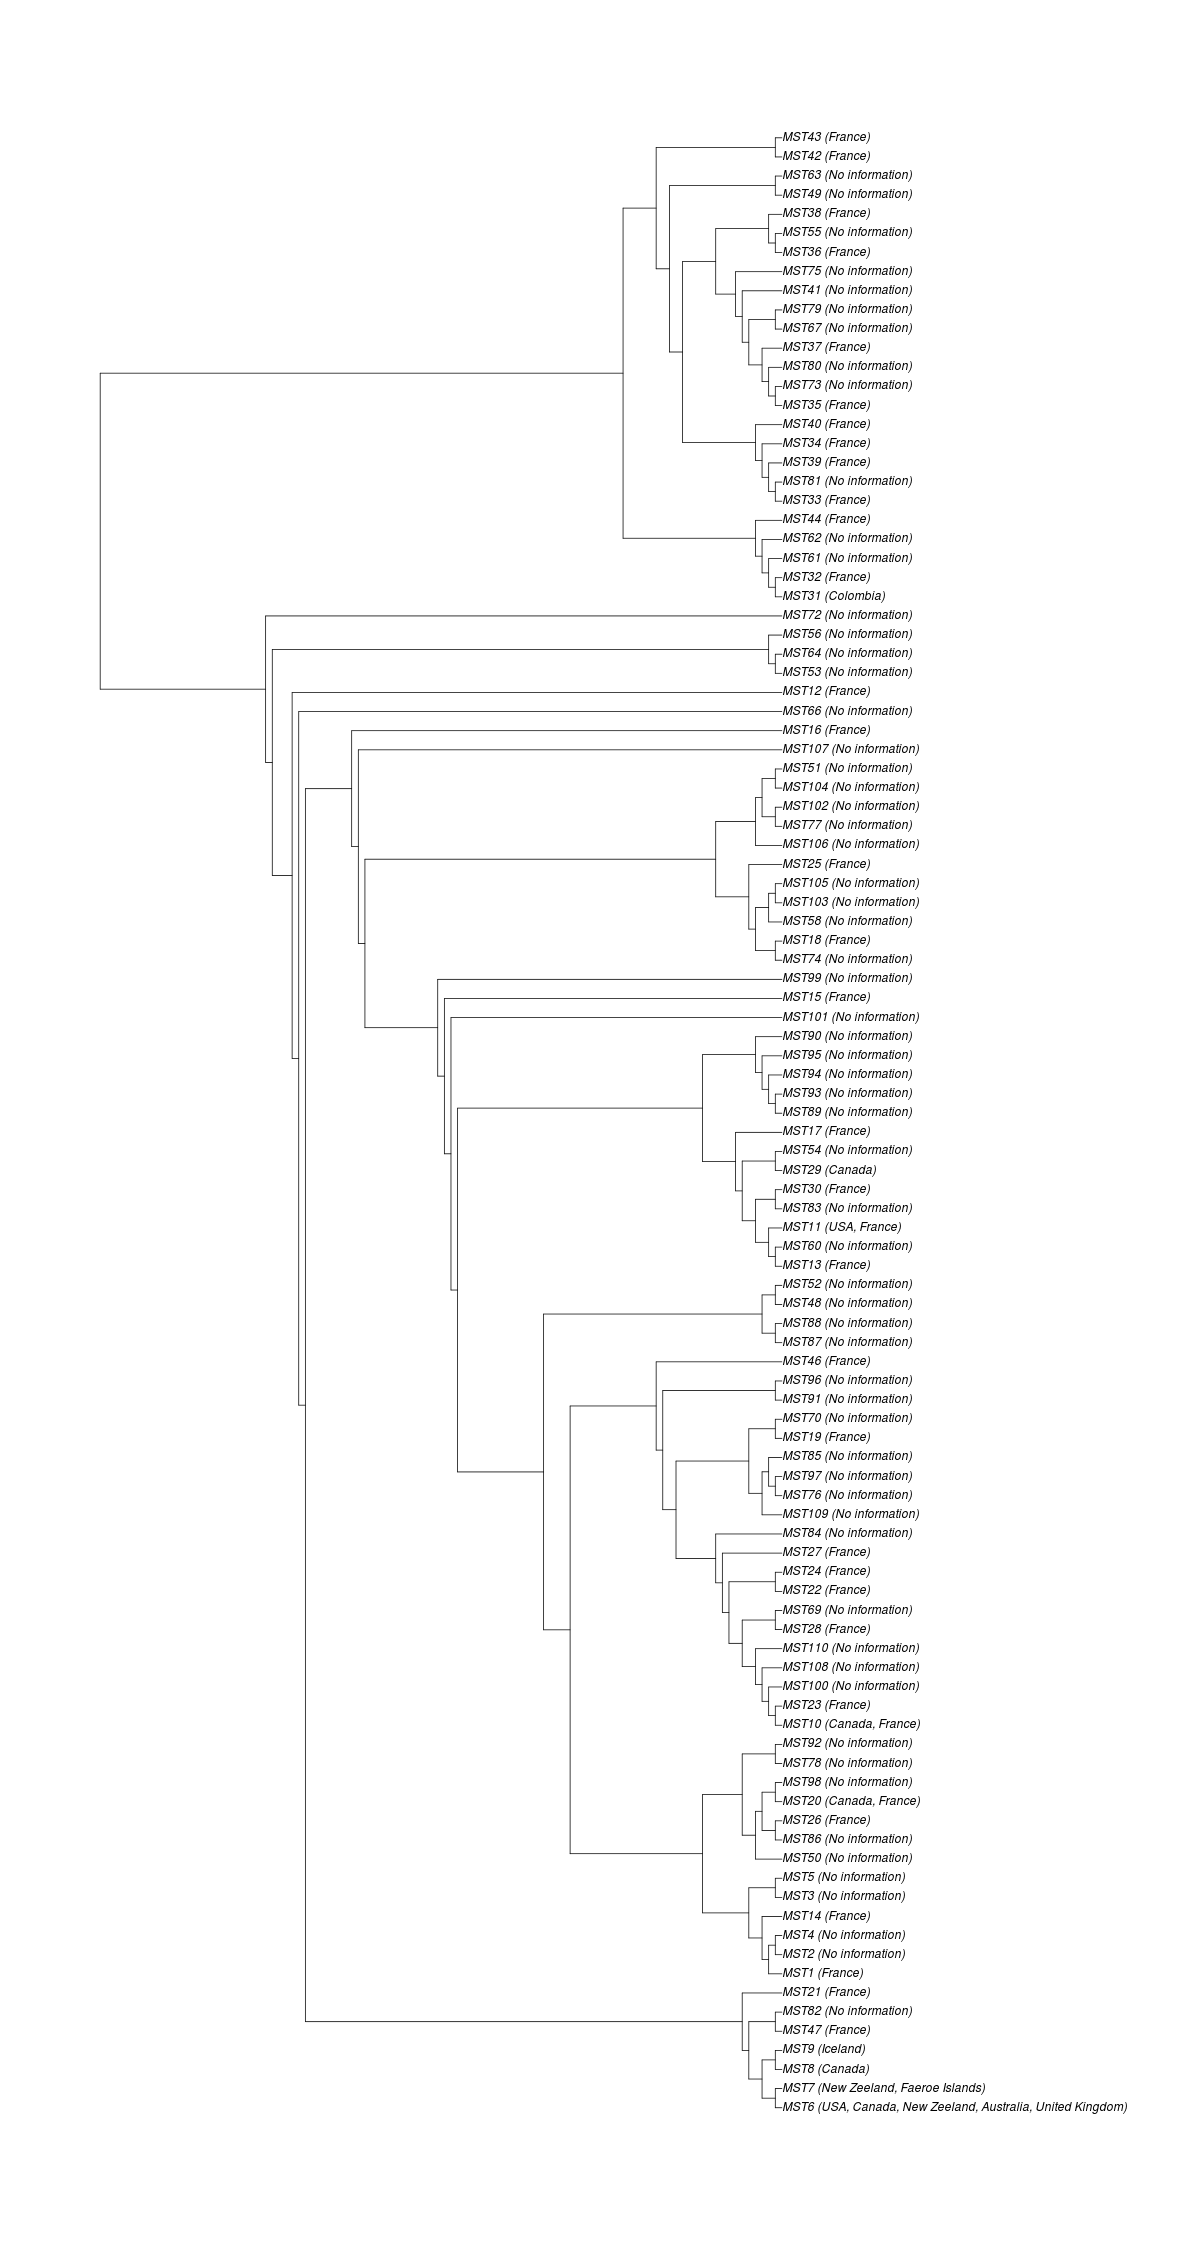 Phylogeny